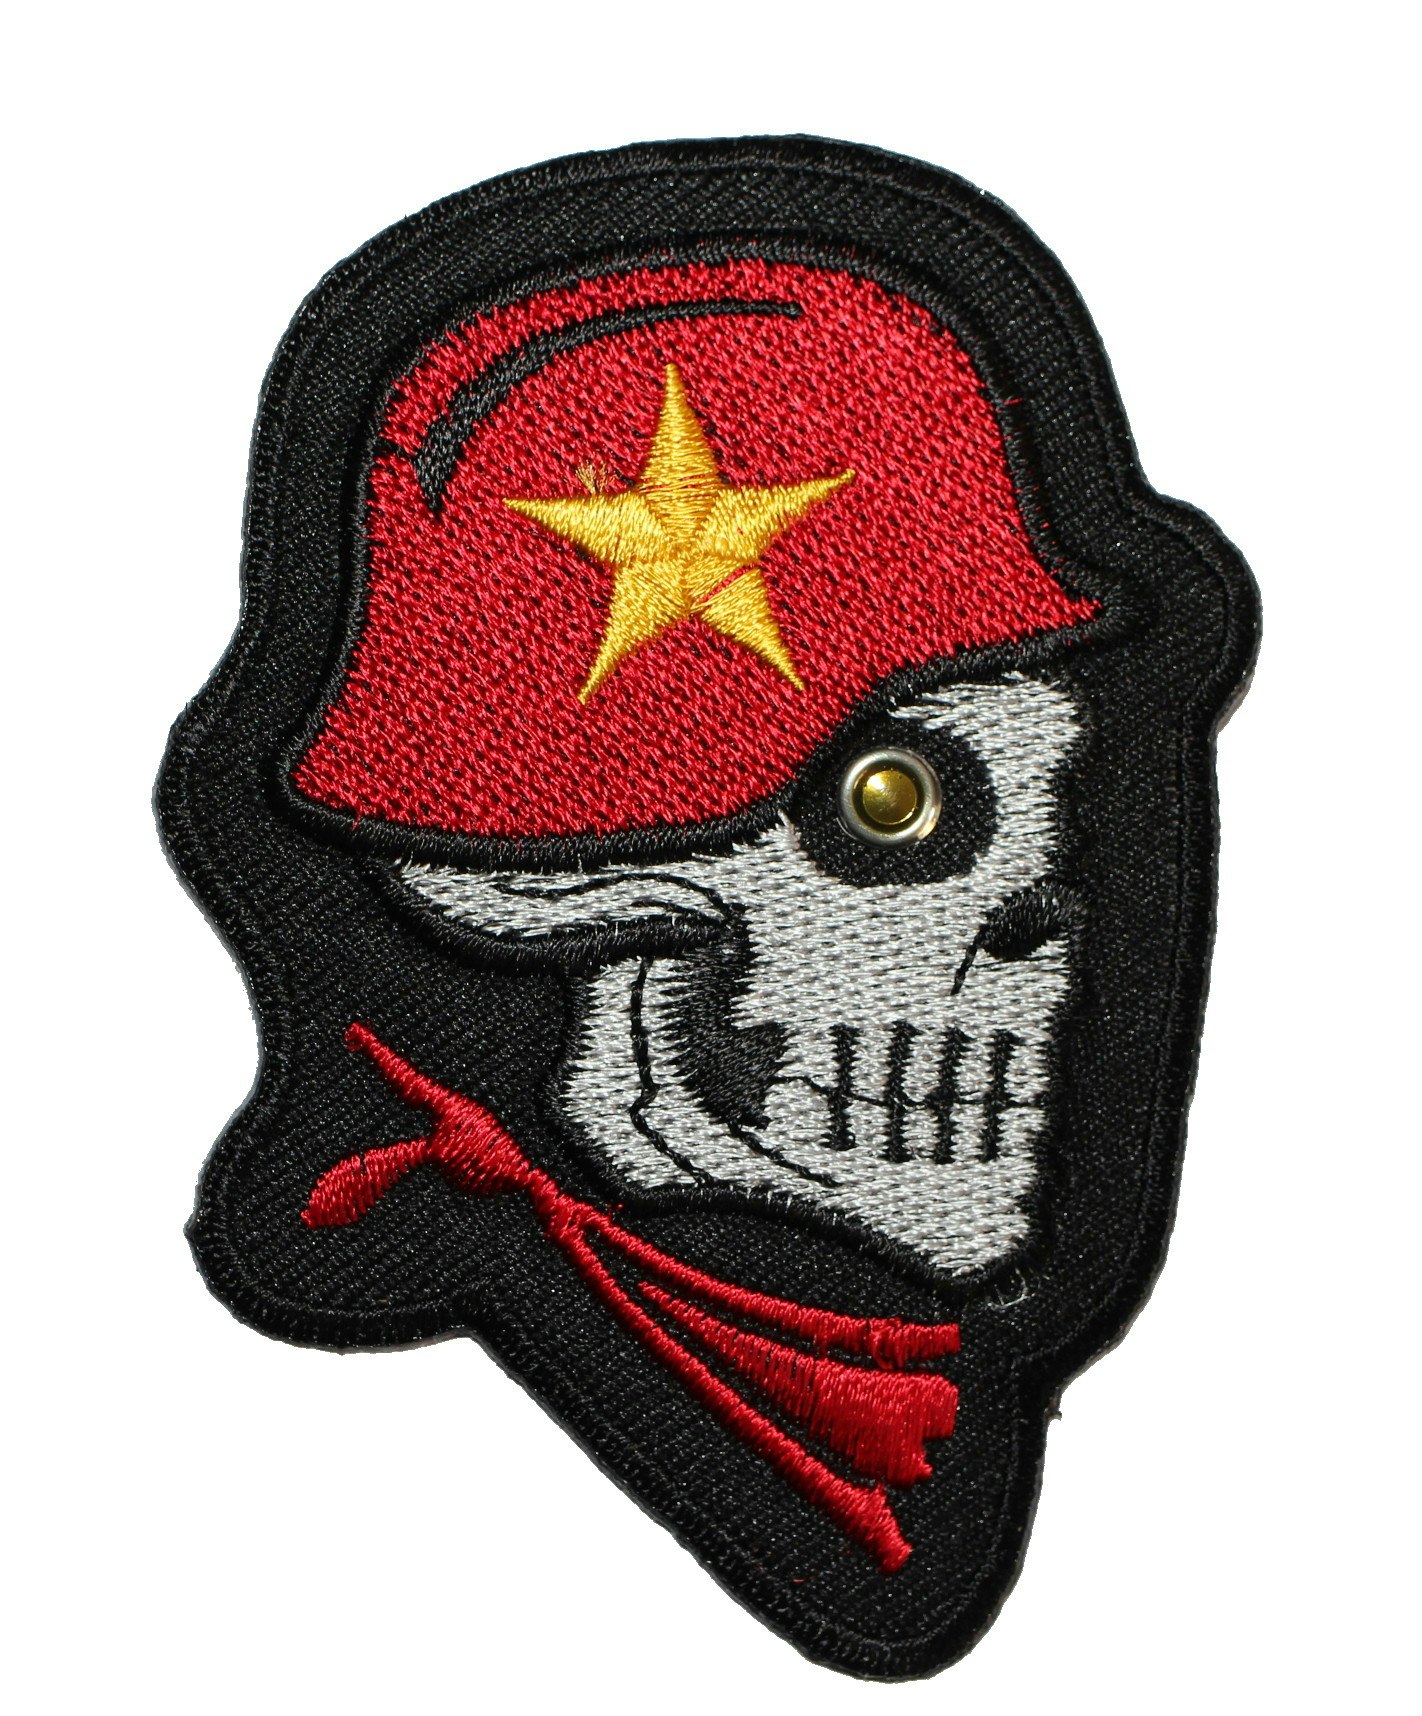 Skull/helmet/star patch